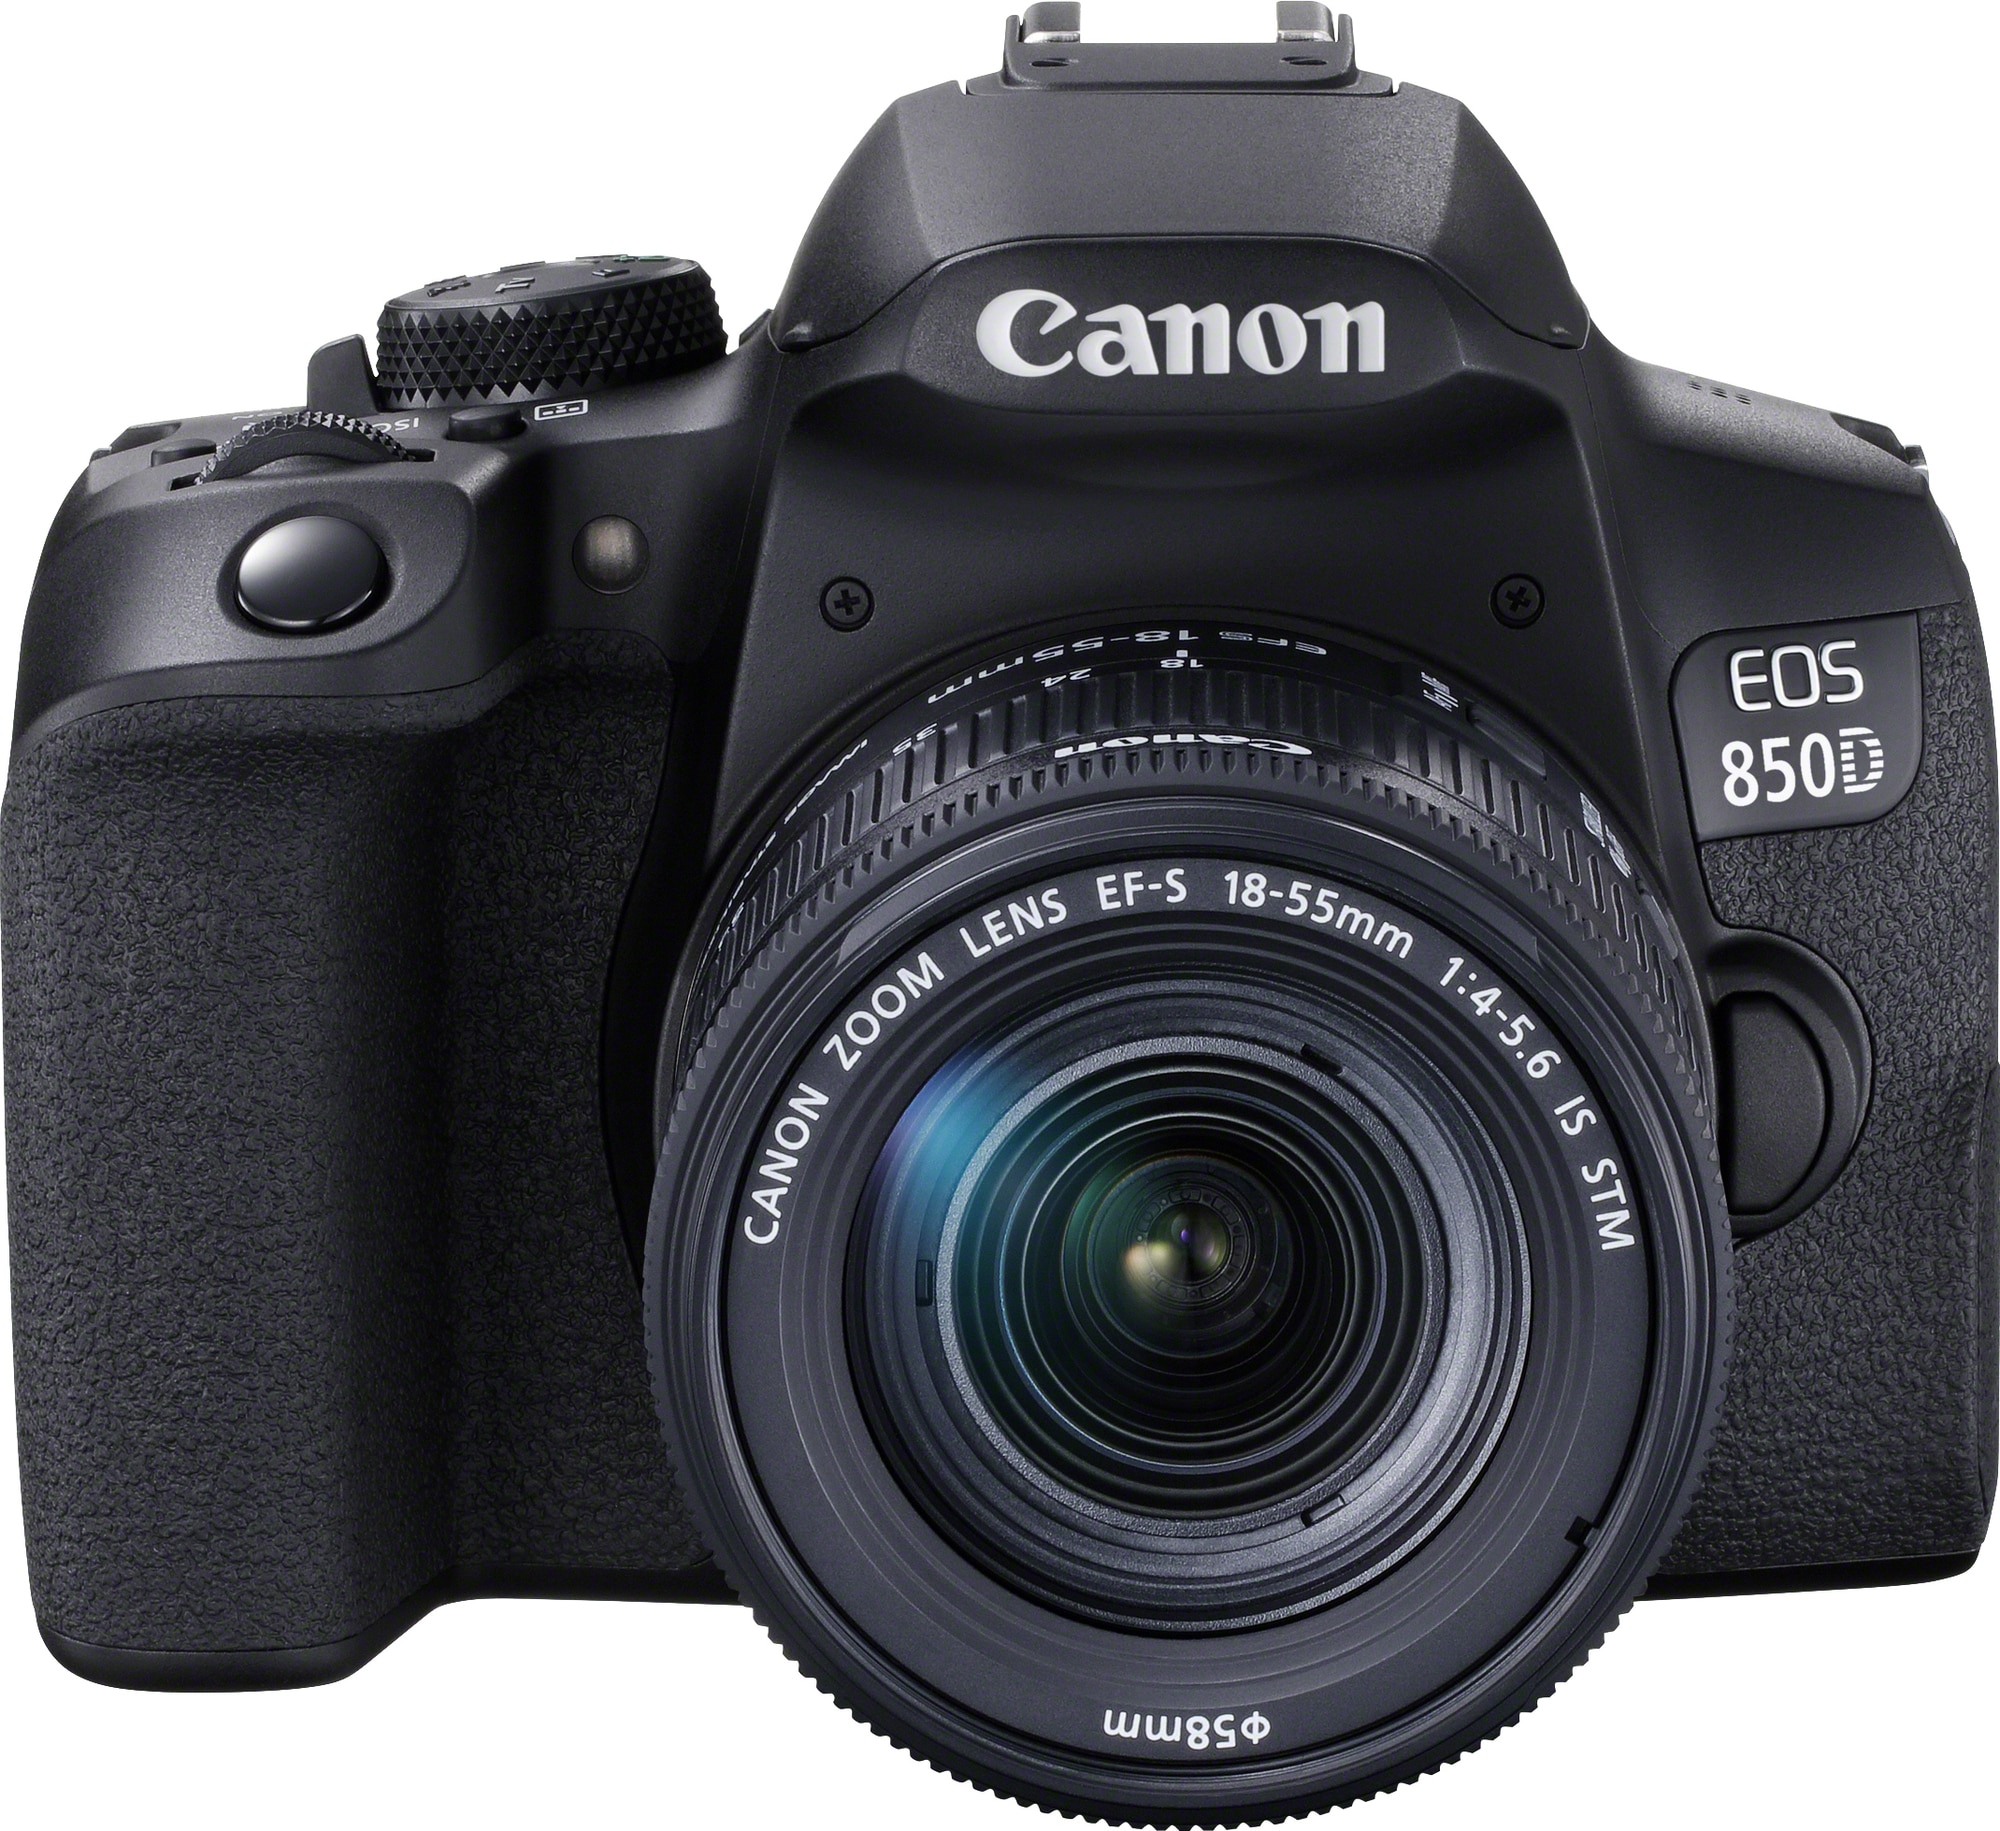 Bølle strejke sæt ind Canon EOS 850D DSLR kamera + 18-55 mm IS STM objektiv | Elgiganten